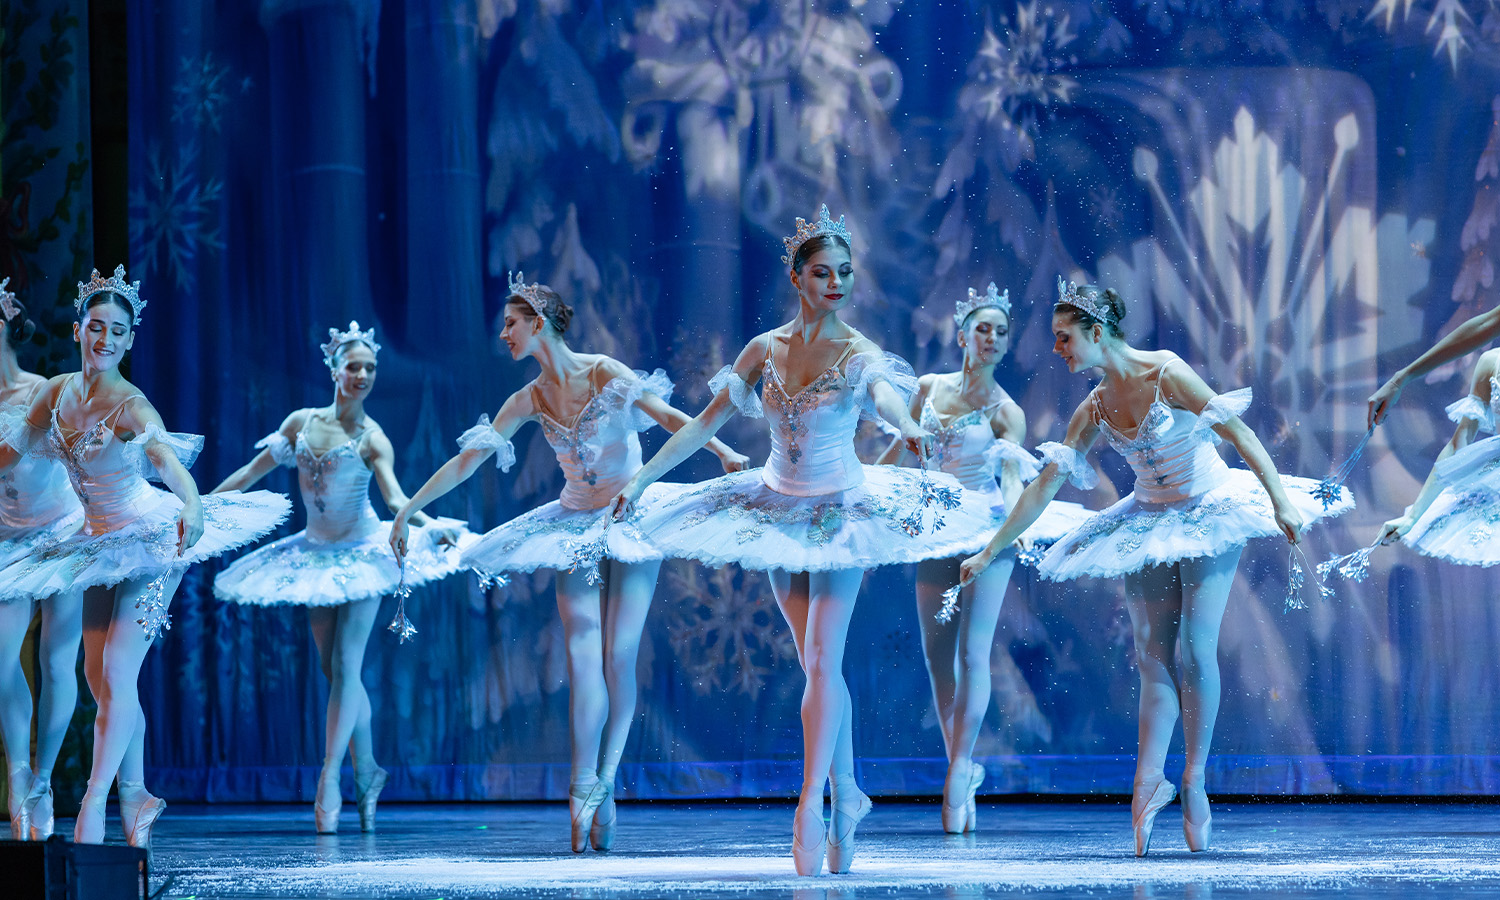 Nutcracker! Magical Christmas Ballet